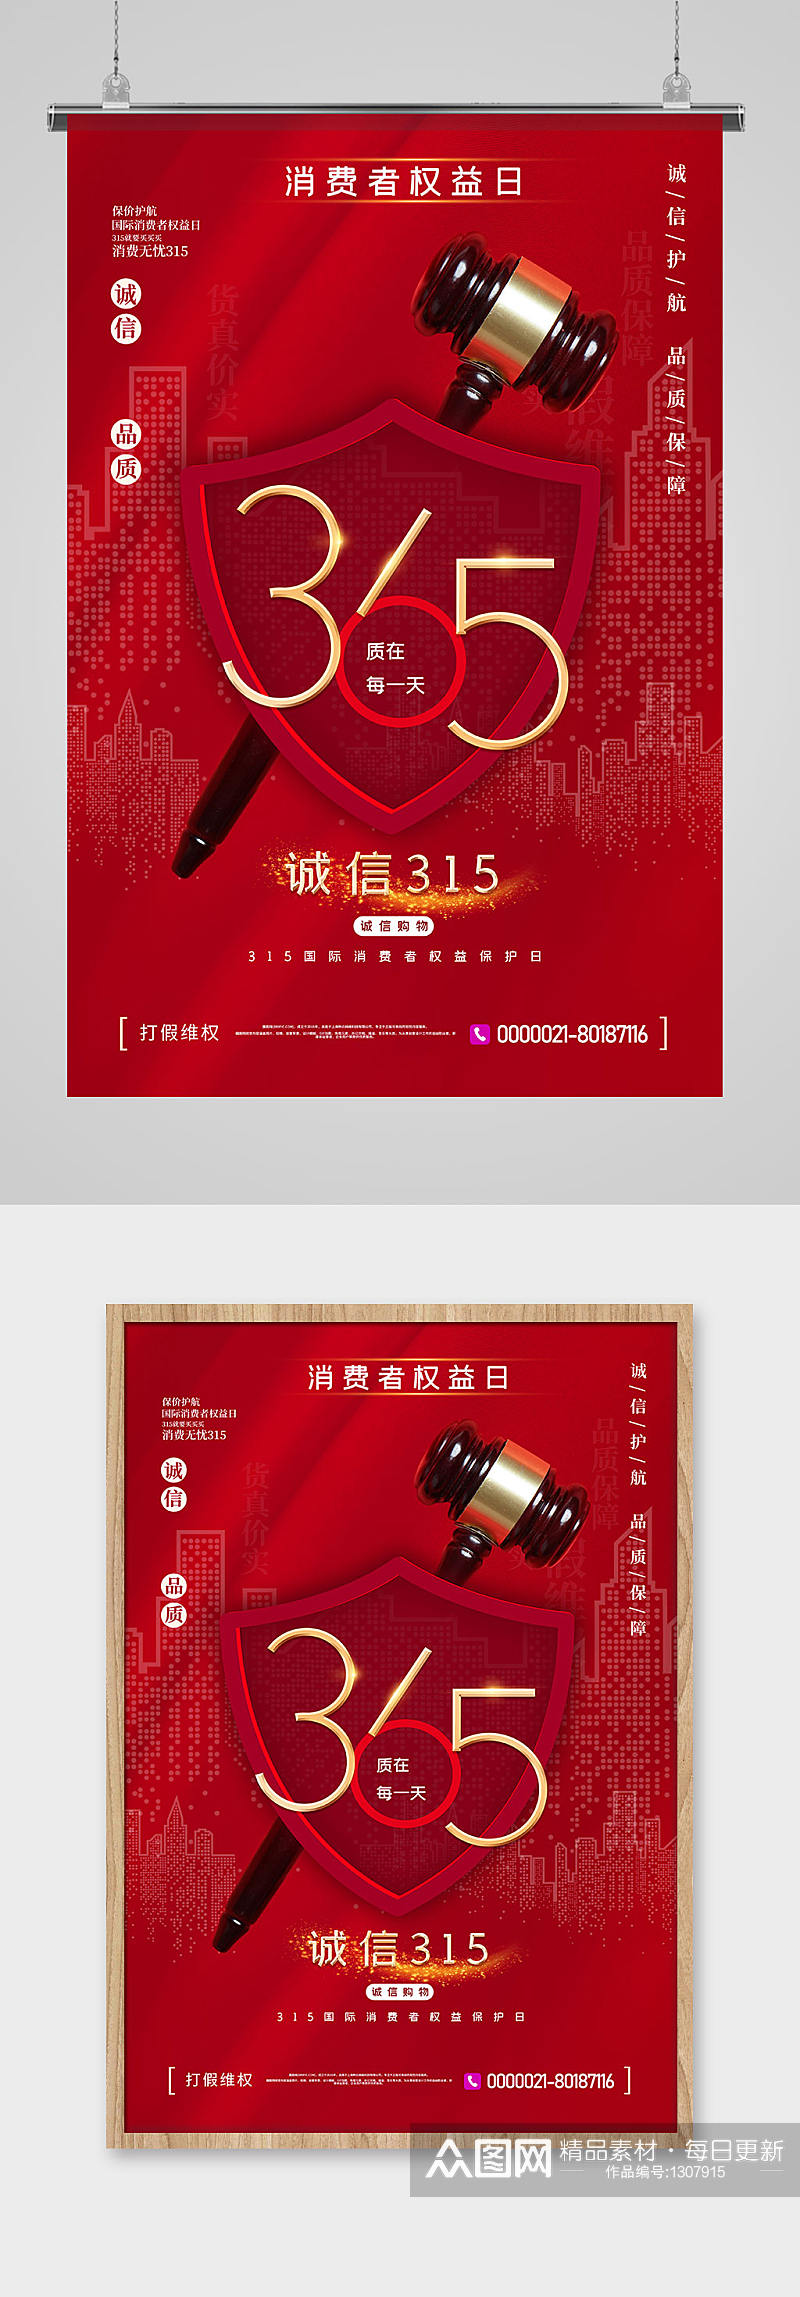 红色315诚信维权主题宣传海报素材